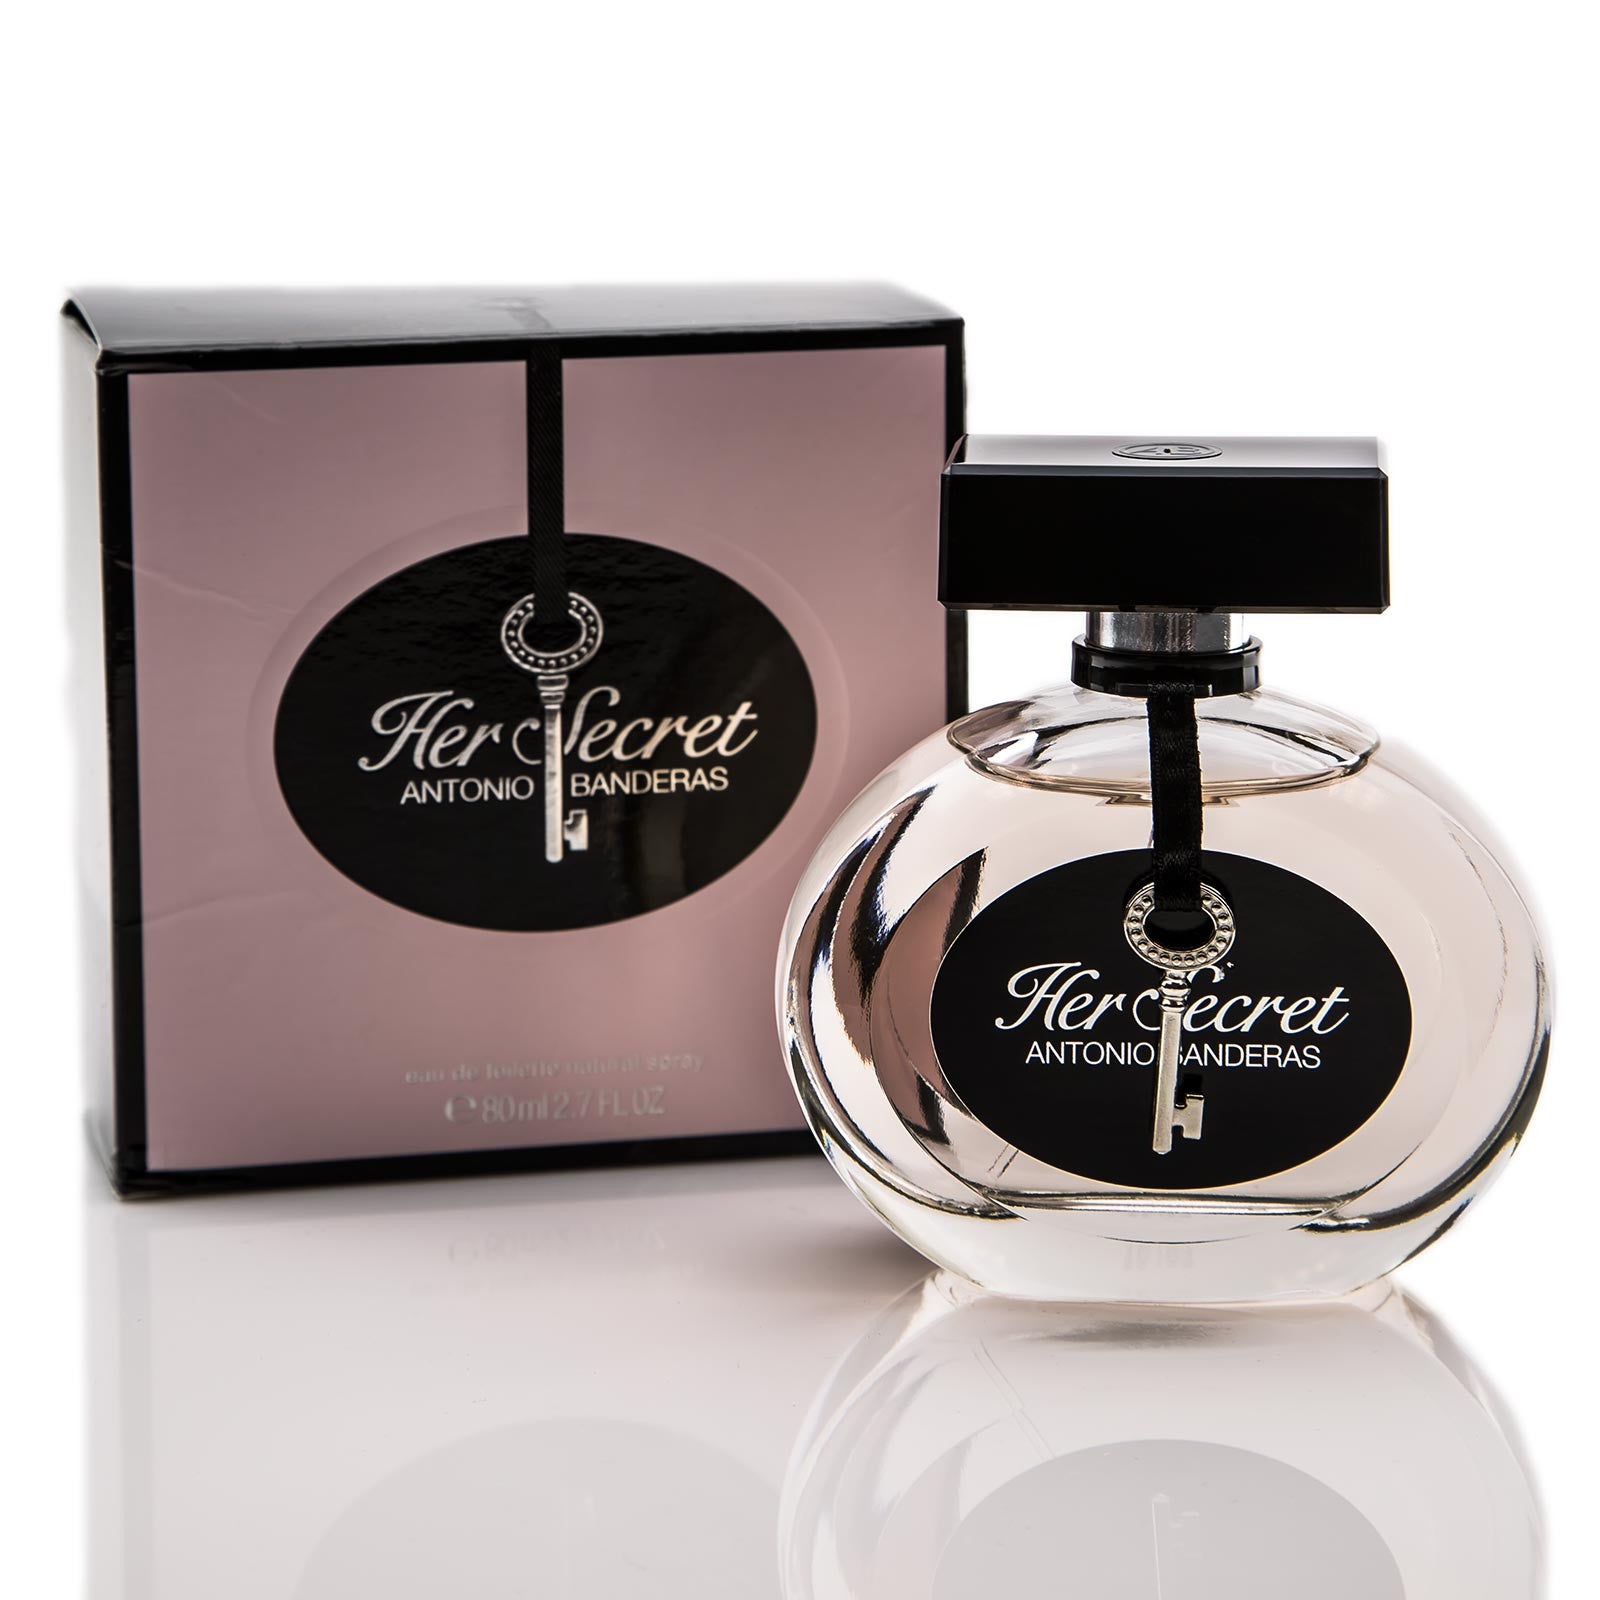 Her Secret Antonio Banderas Perfume For Women By Antonio Banderas In ...